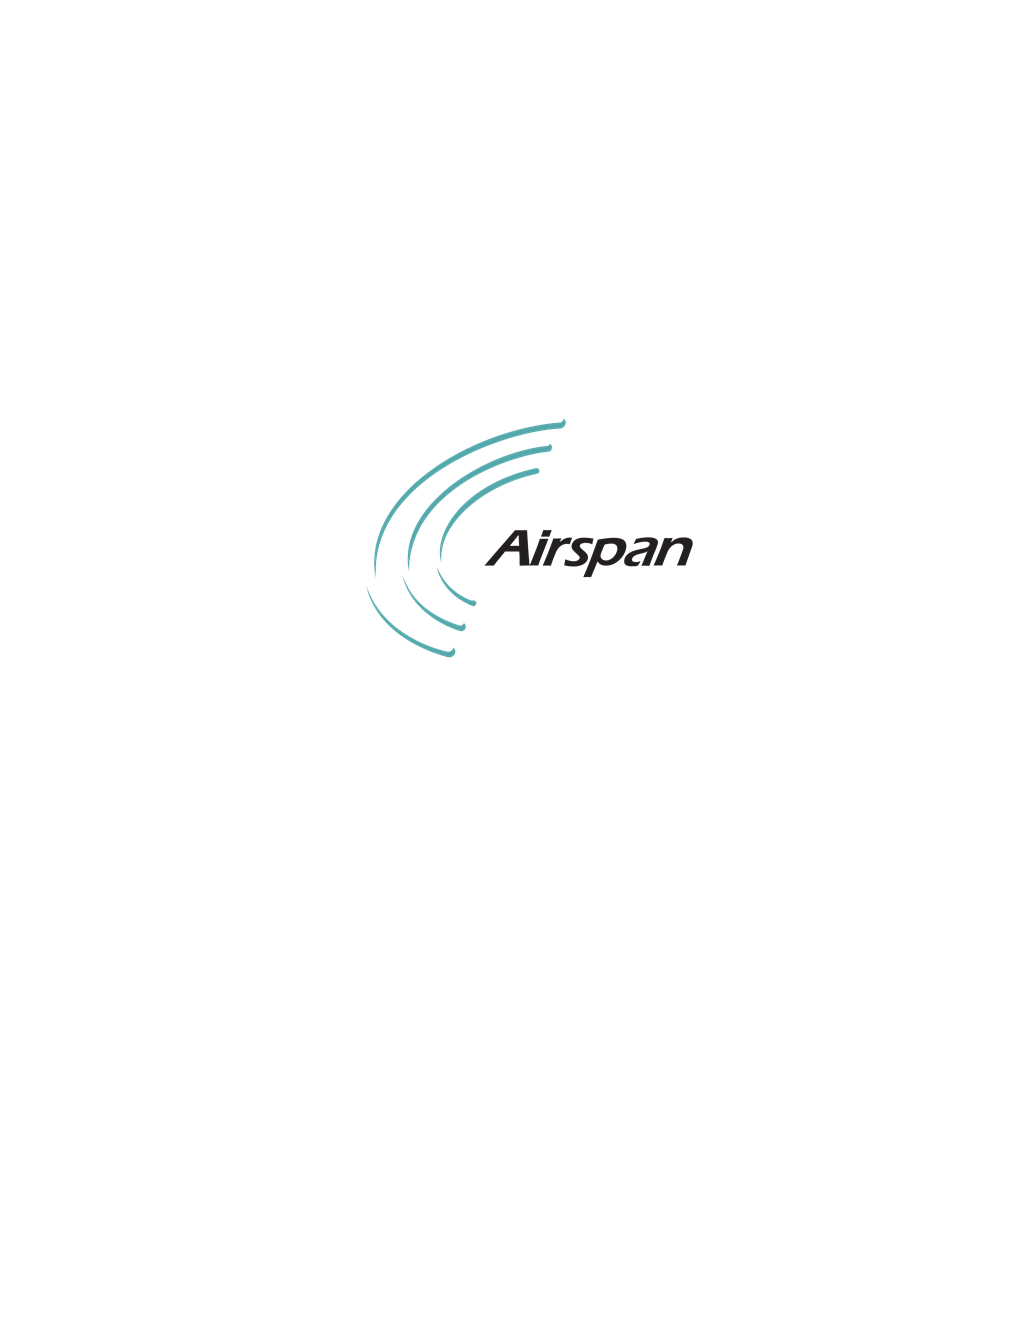 Airspan logotype, transparent .png, medium, large